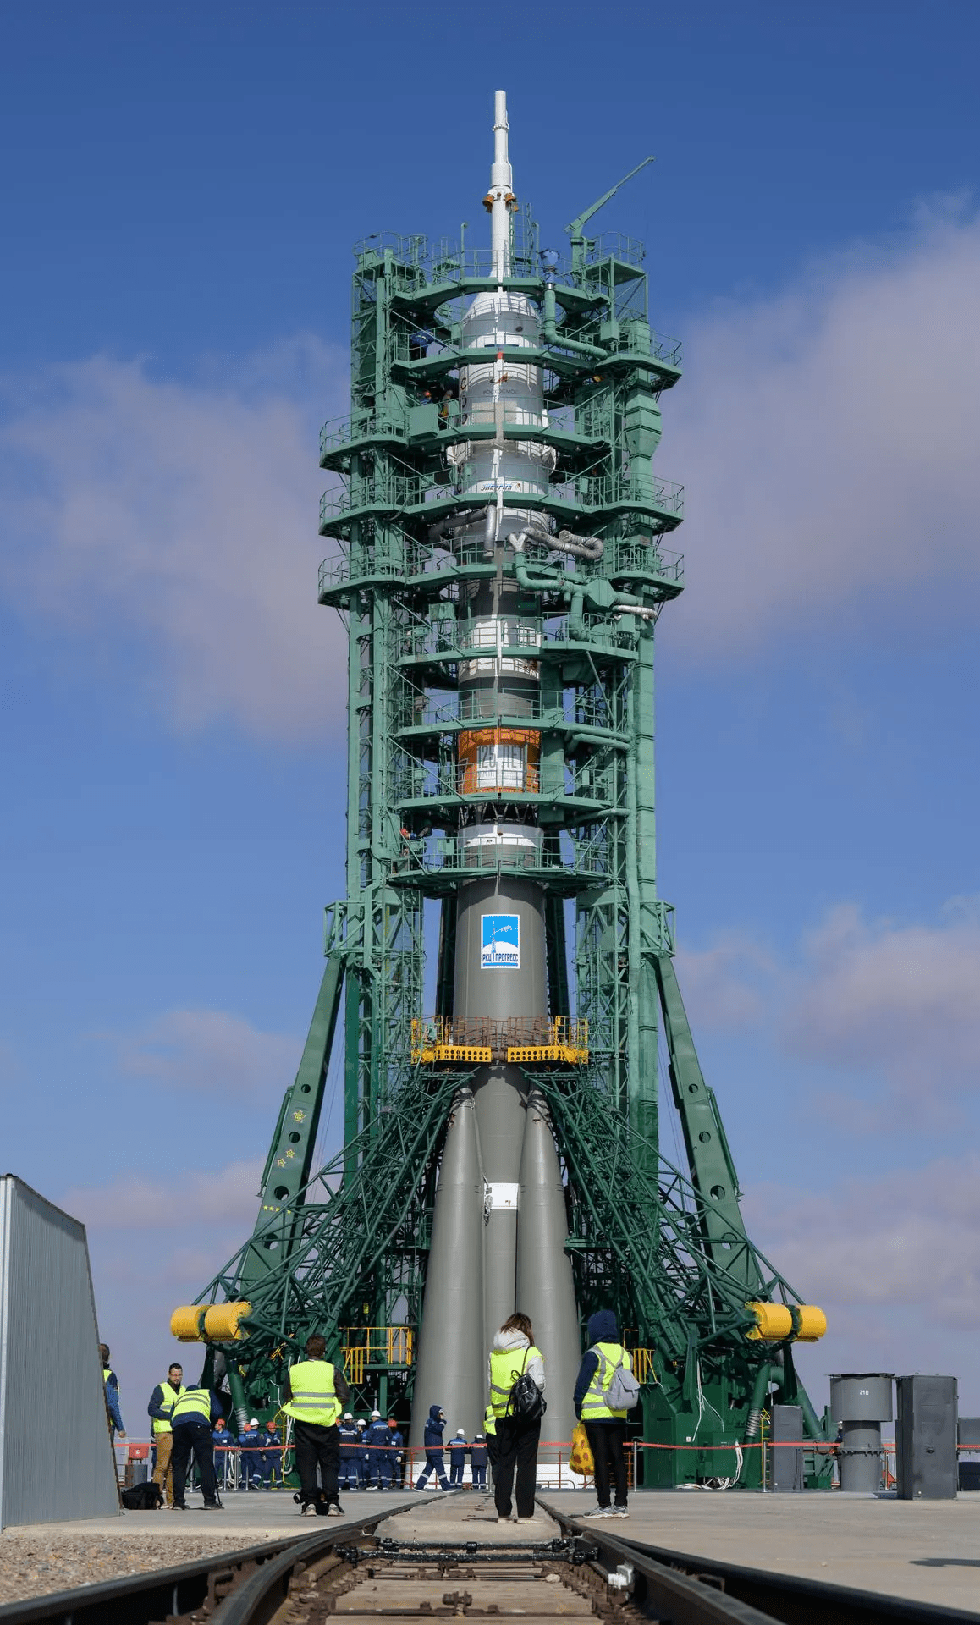 Bộ ảnh quyền lực: Nga nâng tên lửa Soyuz lên bệ, sắp có chuyến bay lịch sử - Ảnh 11.